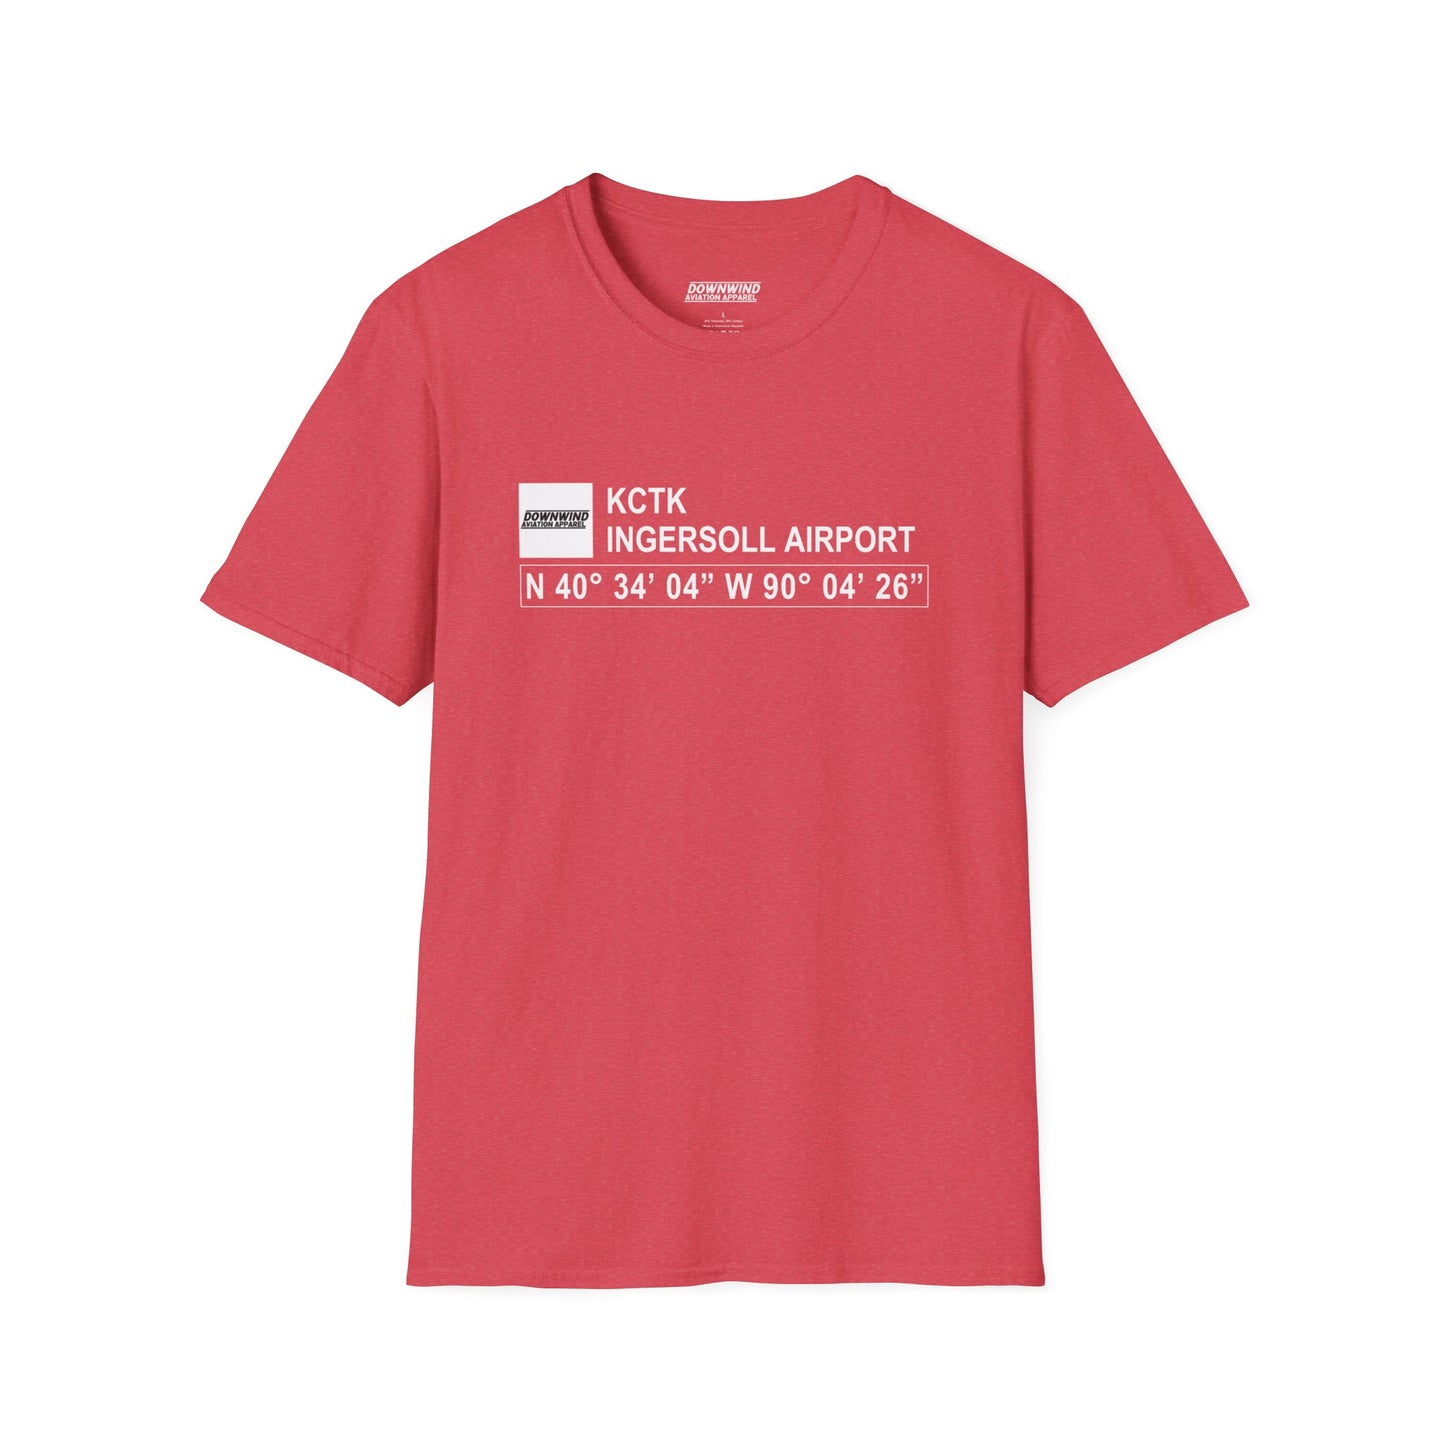 KCTK / Ingersoll Airport T-Shirt